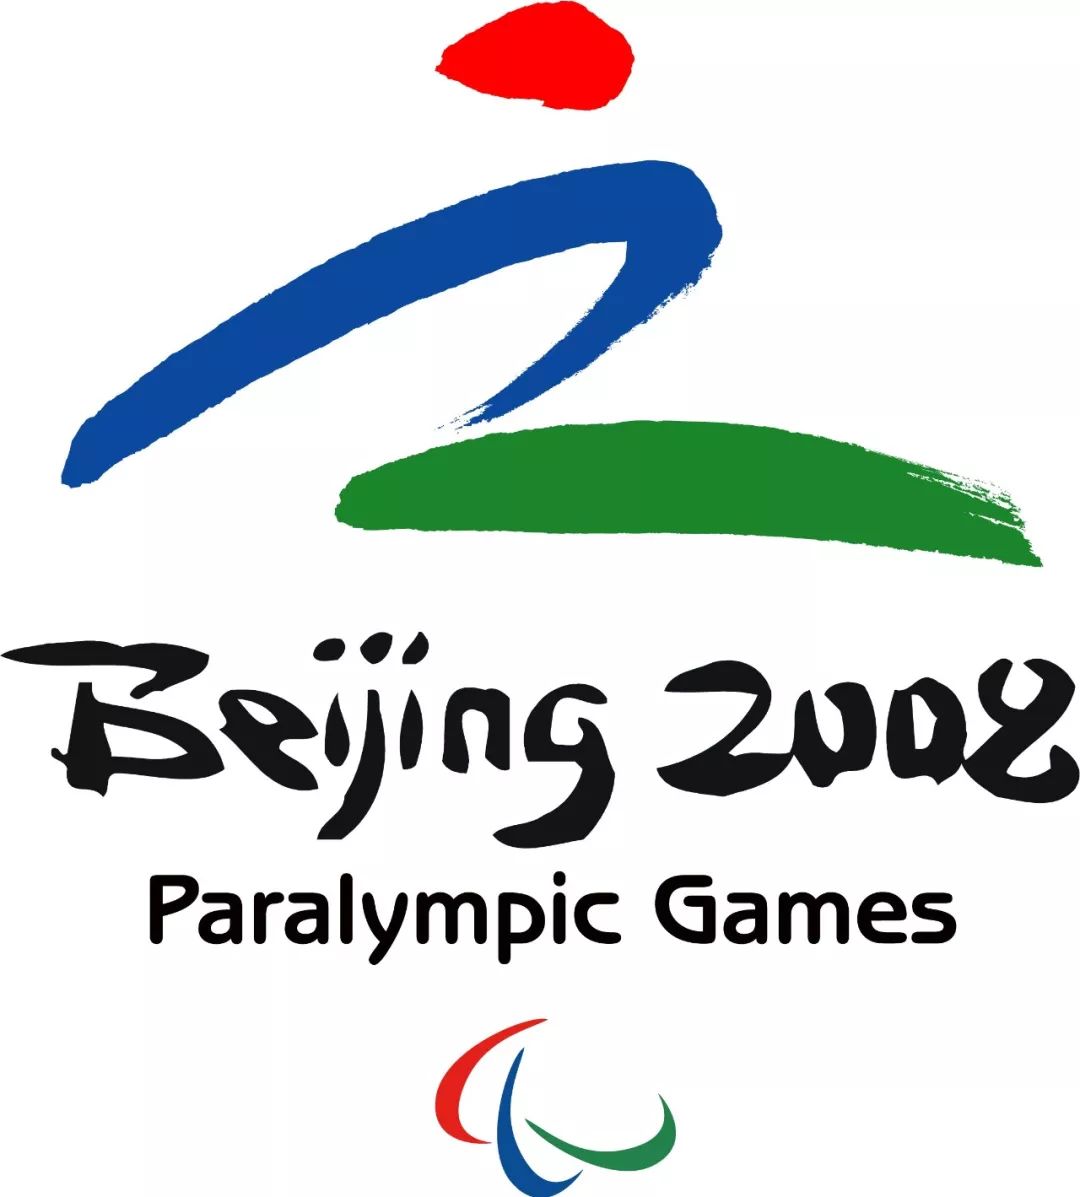 作者:刘波及残奥会邮票设计(2008)2008北京残奥会会徽设计03北京奥运